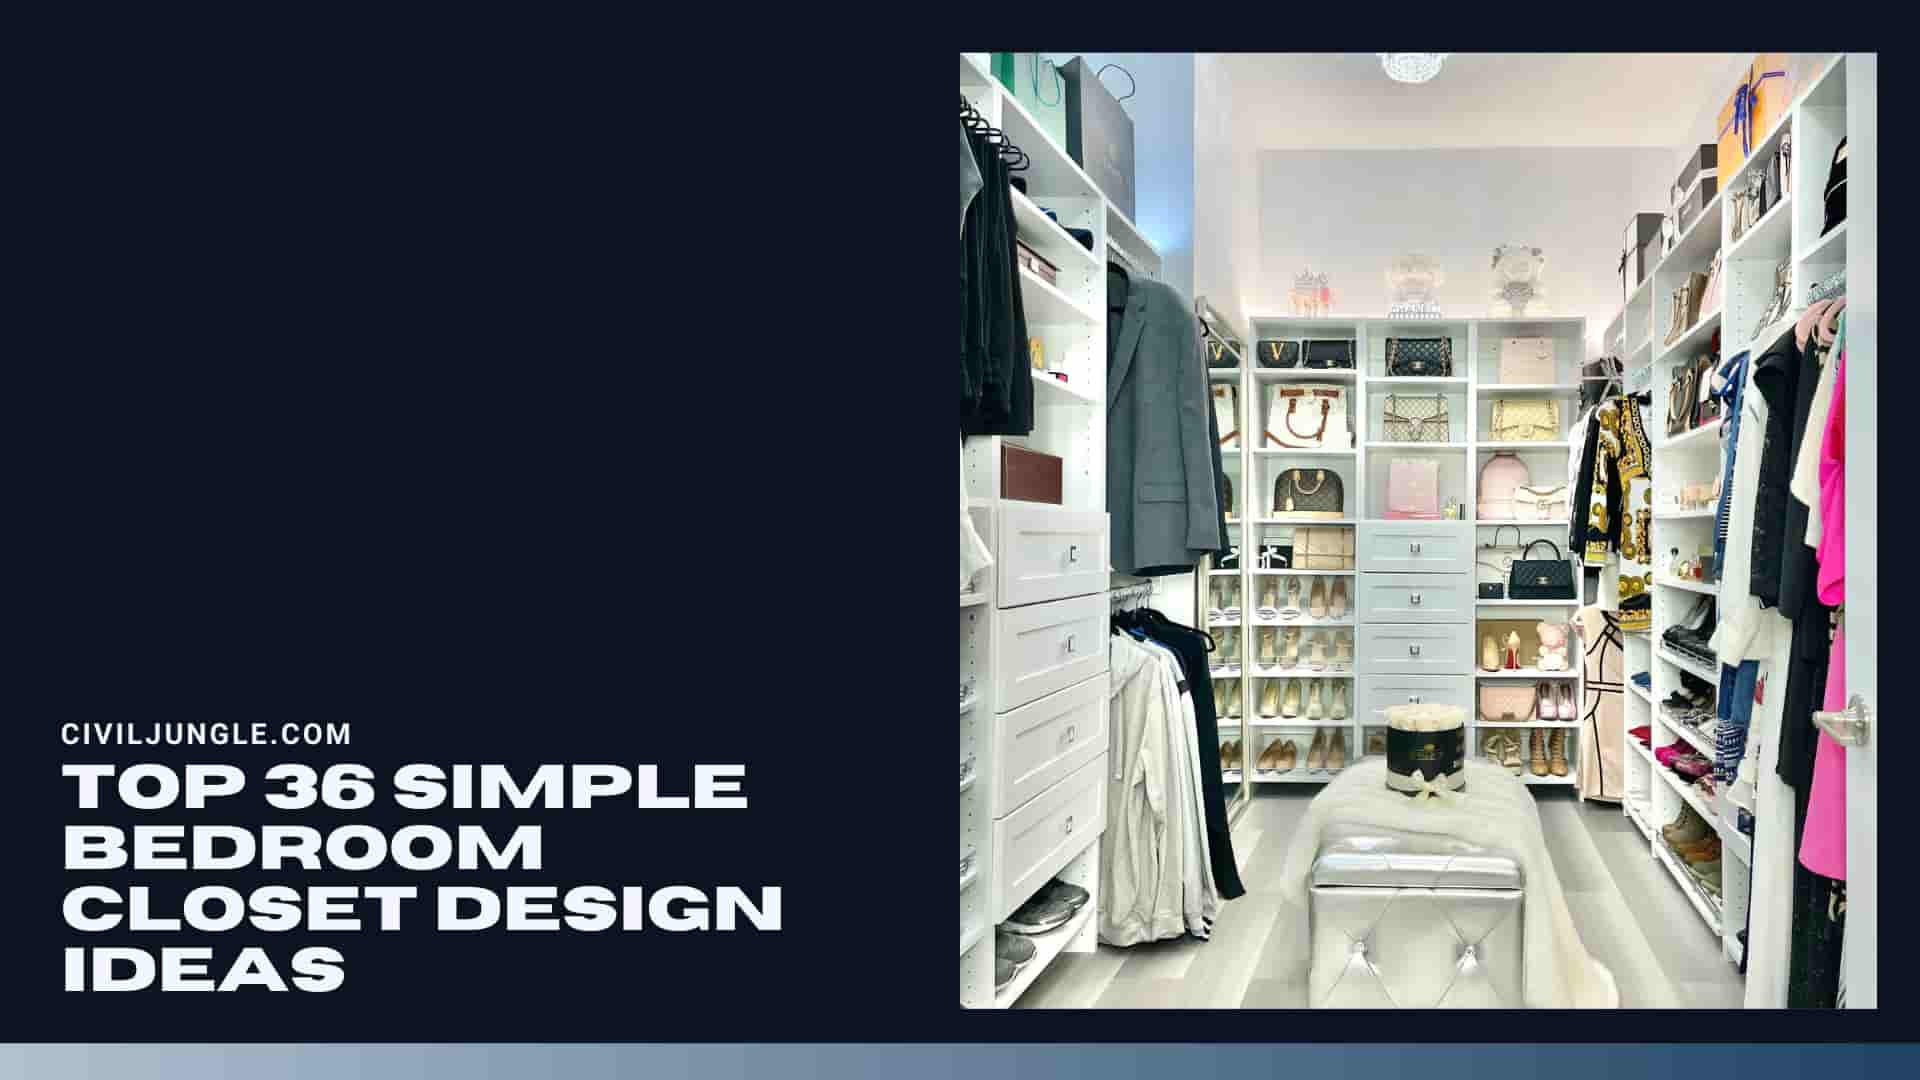 Top 36 Simple Bedroom Closet Design Ideas